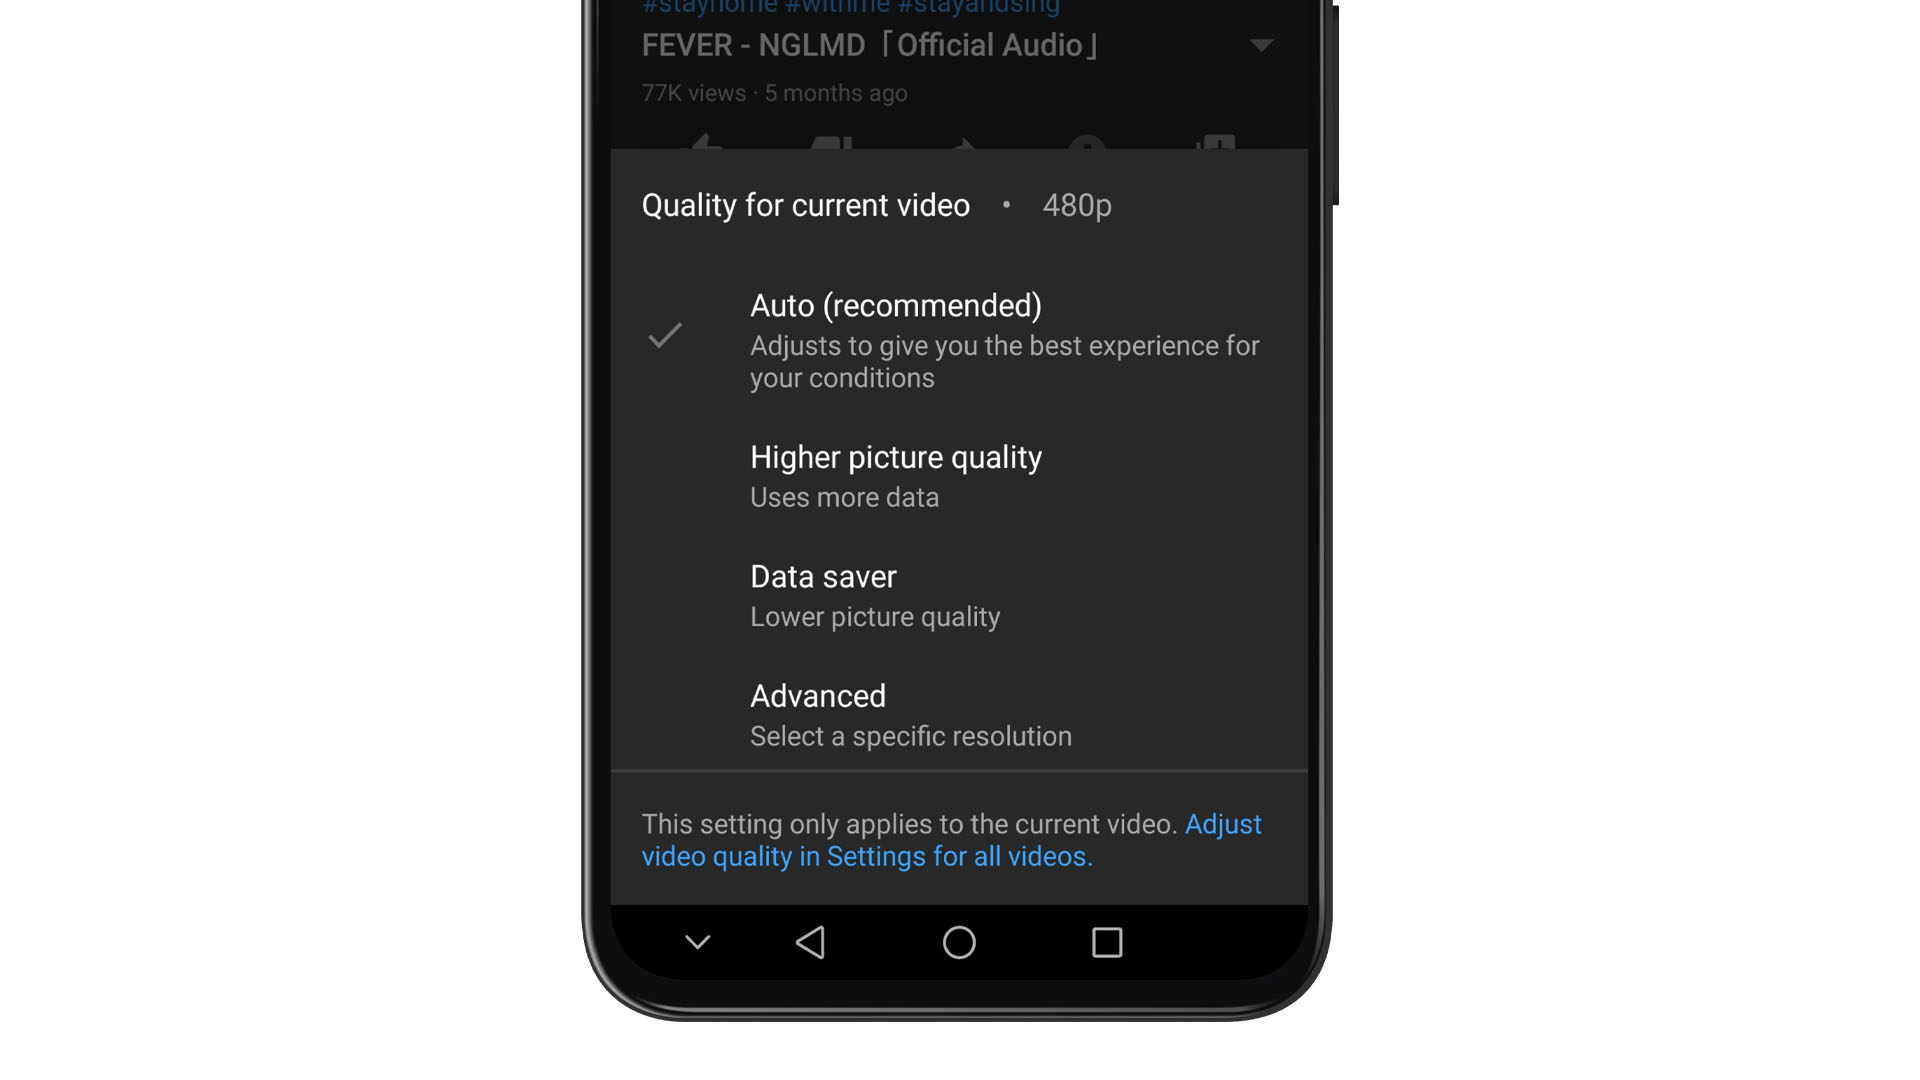 Kualiti Video Lalai Kini Boleh Ditetapkan Di Dalam Aplikasi YouTube Seakan Netflix